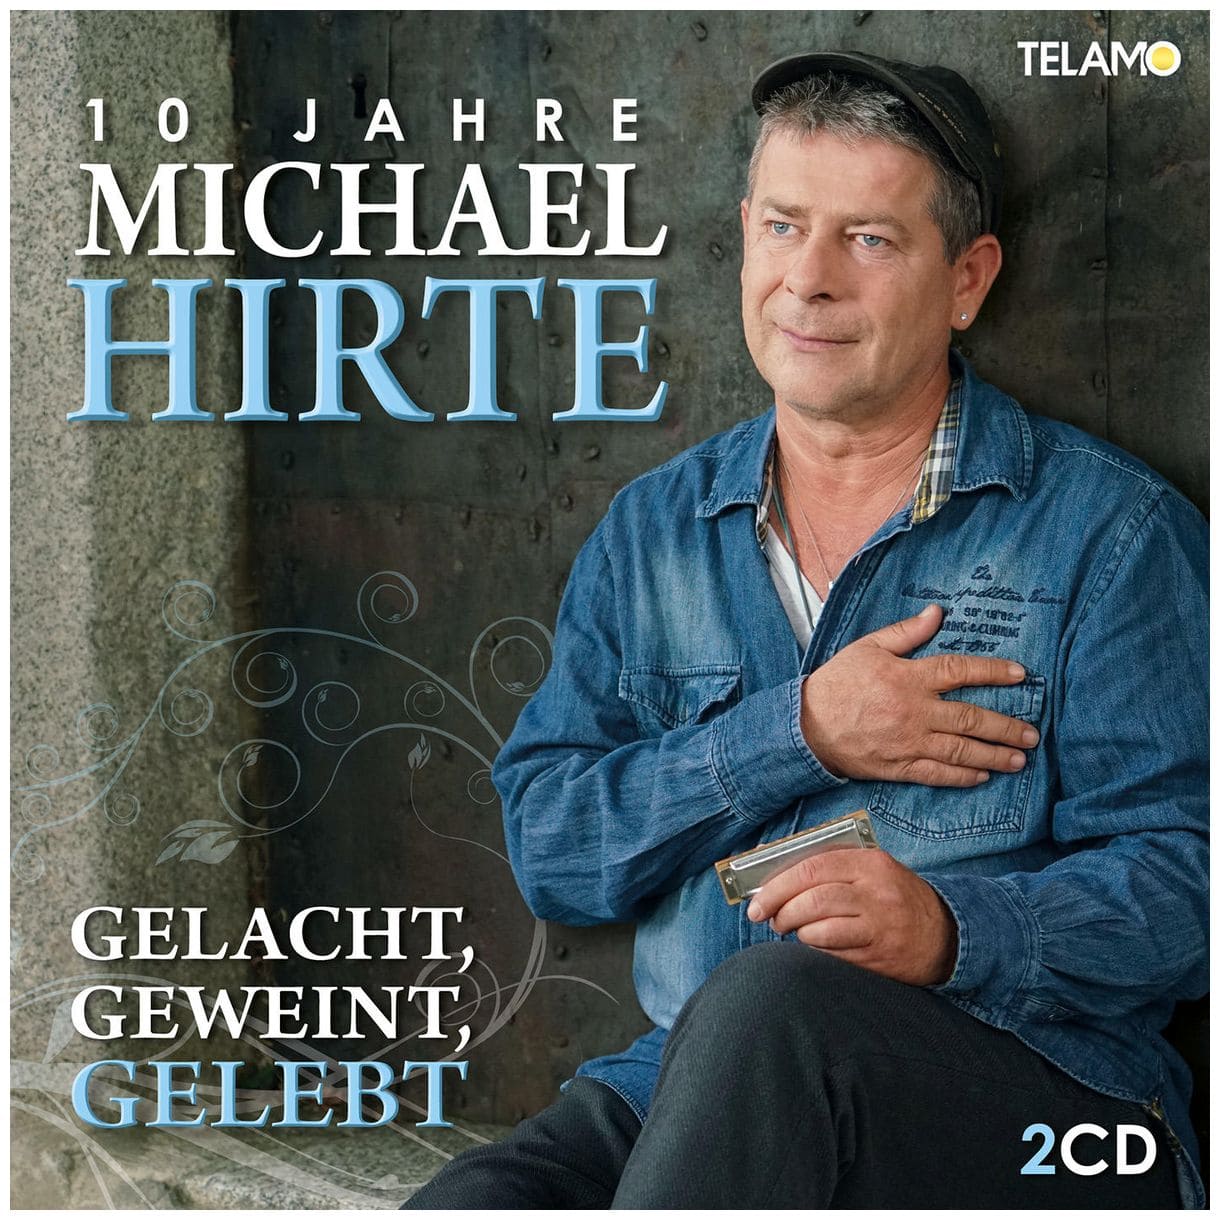 Michael Hirte - Gelacht,Geweint,Gelebt-10 Jahre Michael Hirte 